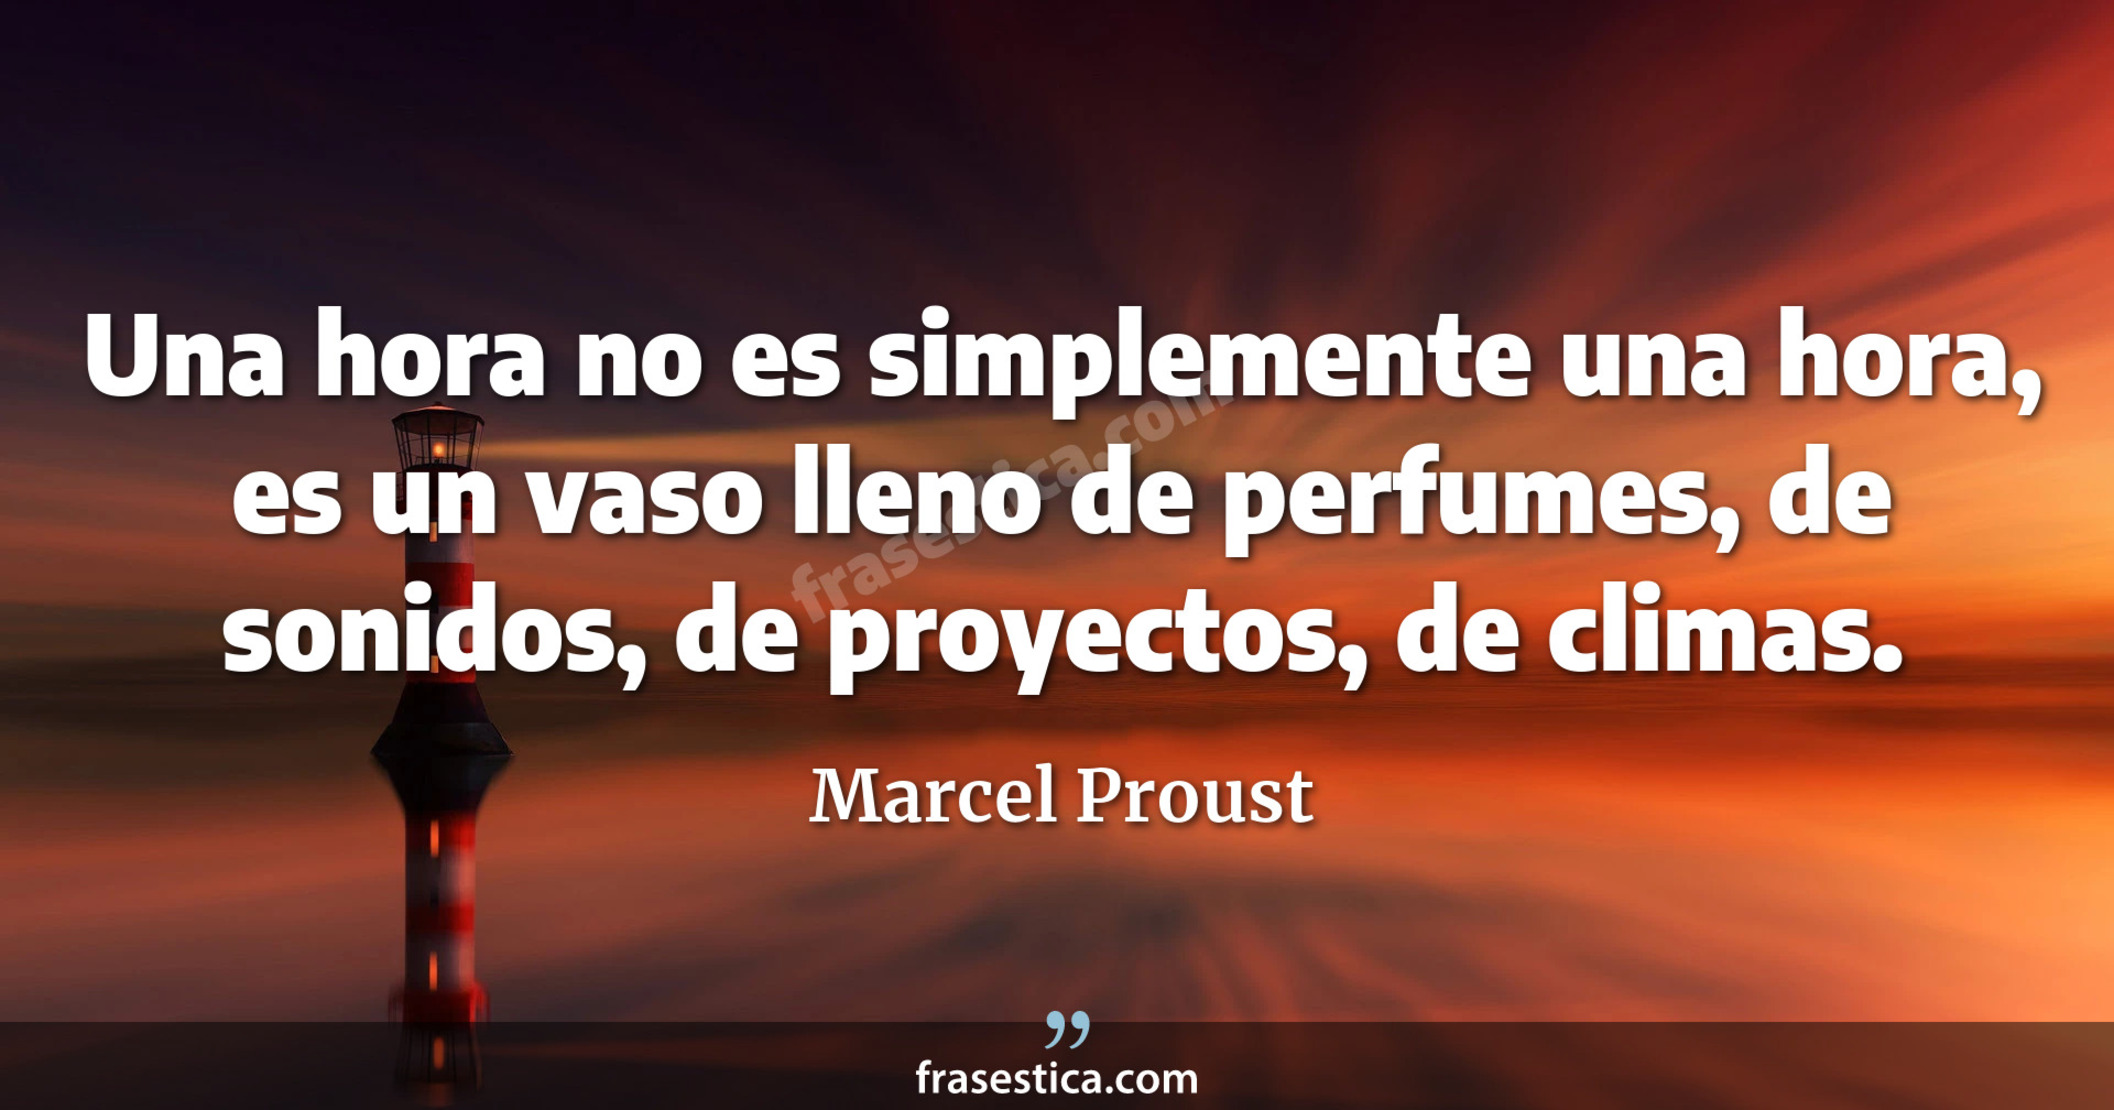 Una hora no es simplemente una hora, es un vaso lleno de perfumes, de sonidos, de proyectos, de climas. - Marcel Proust